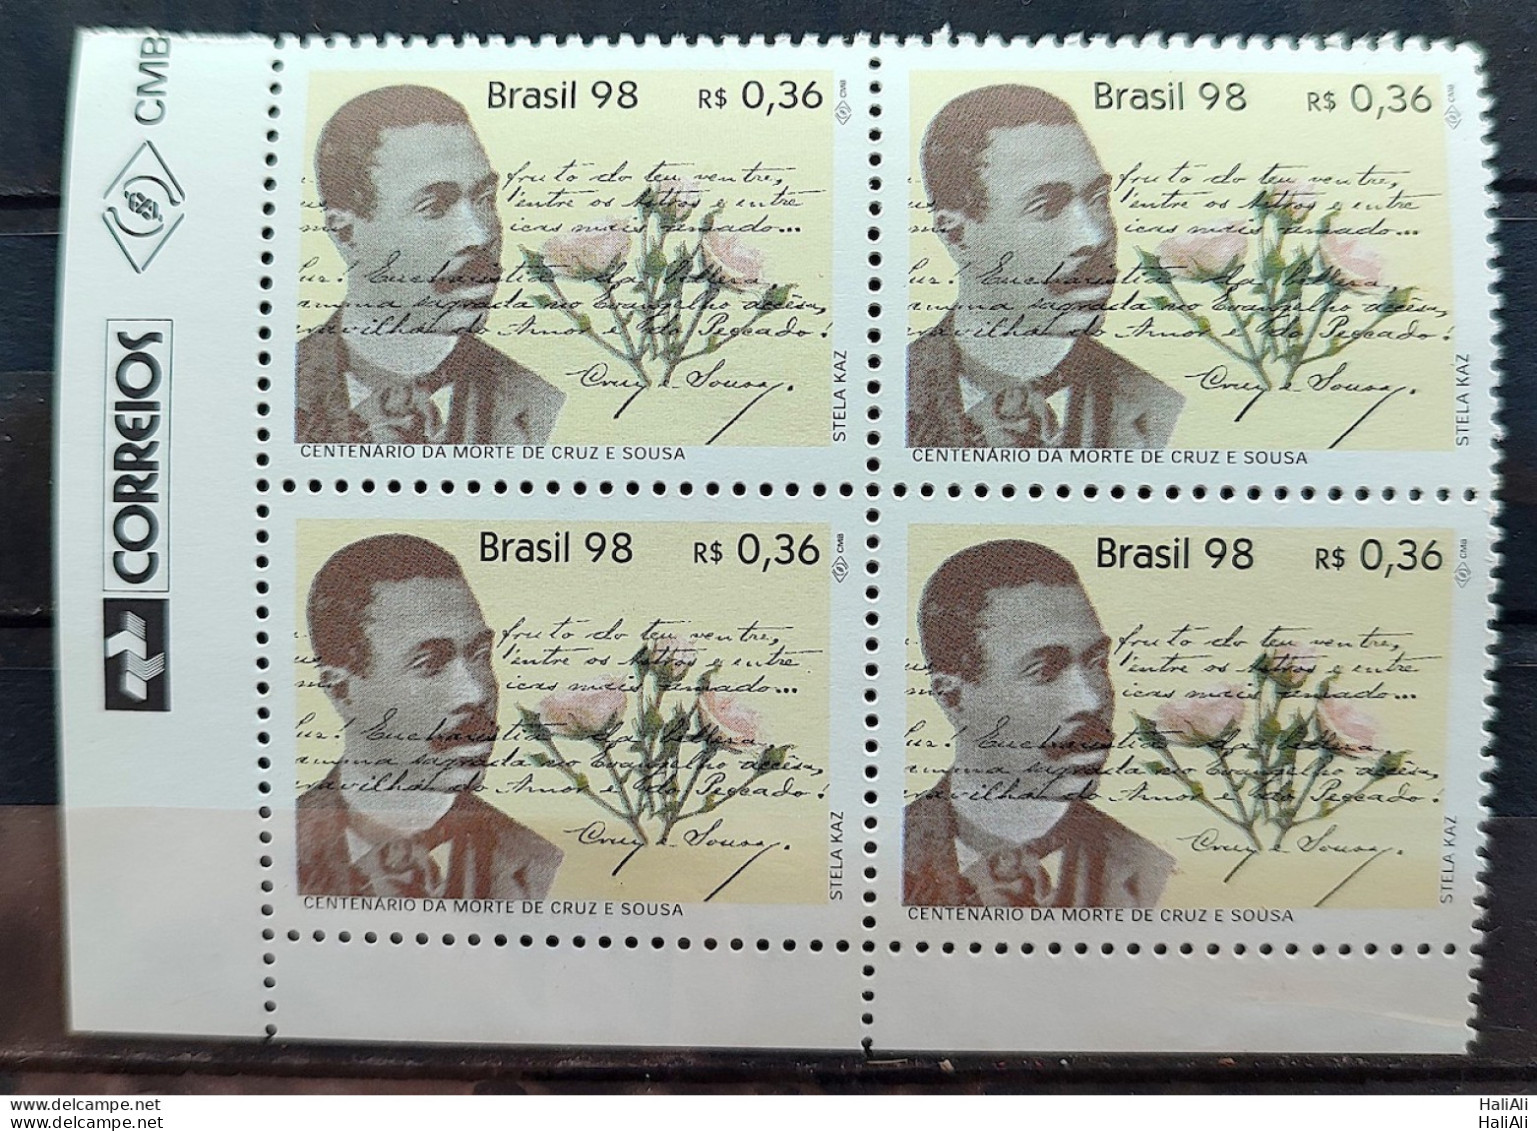 C 2078 Brazil Stamp Cruz E Sousa Literature 1998 Block Of 4 Vignette Correios - Unused Stamps